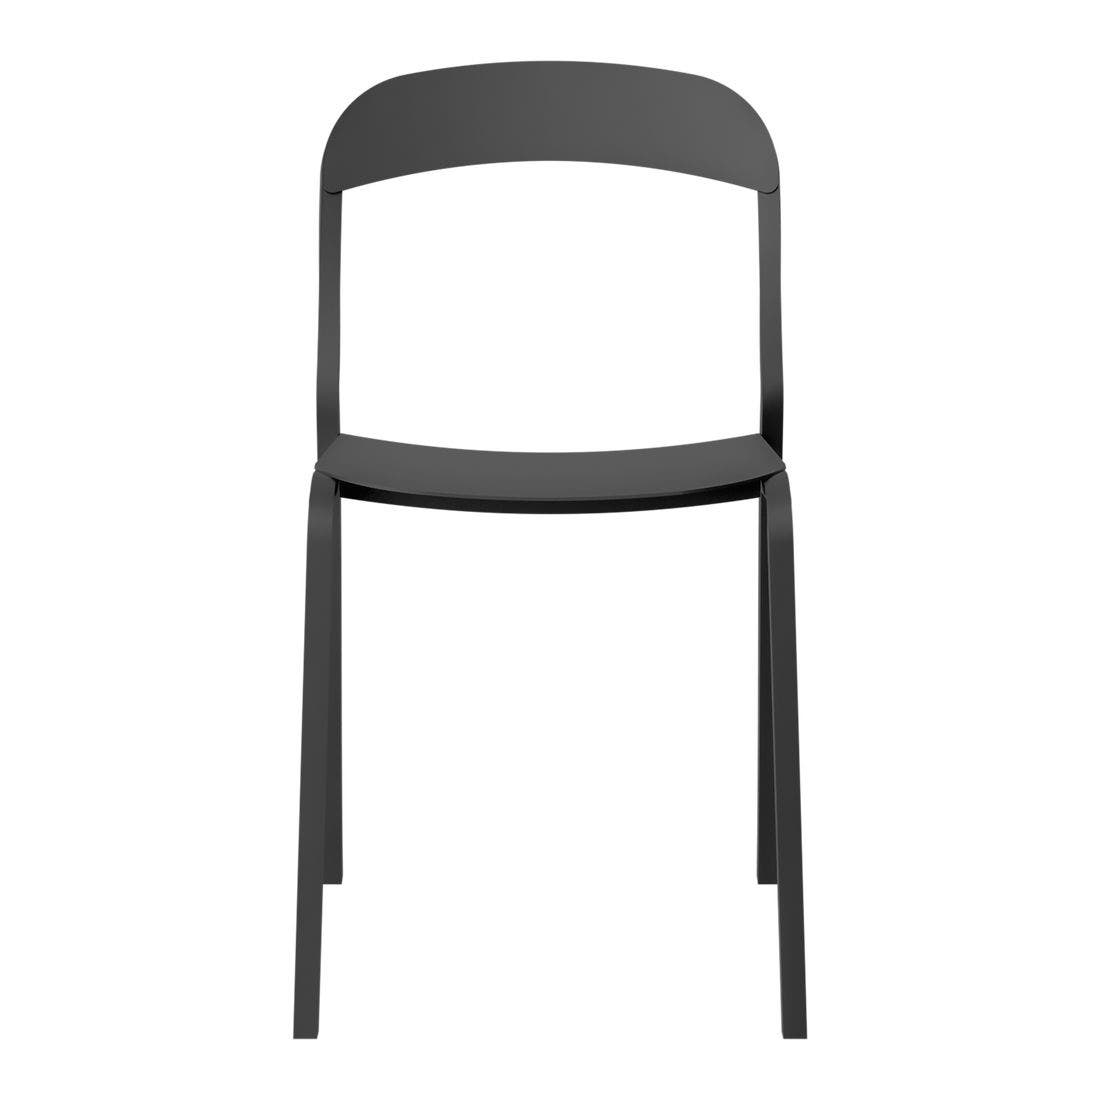 เก้าอี้อลูมิเนียม Habitat รุ่น Ludo สีดำ1